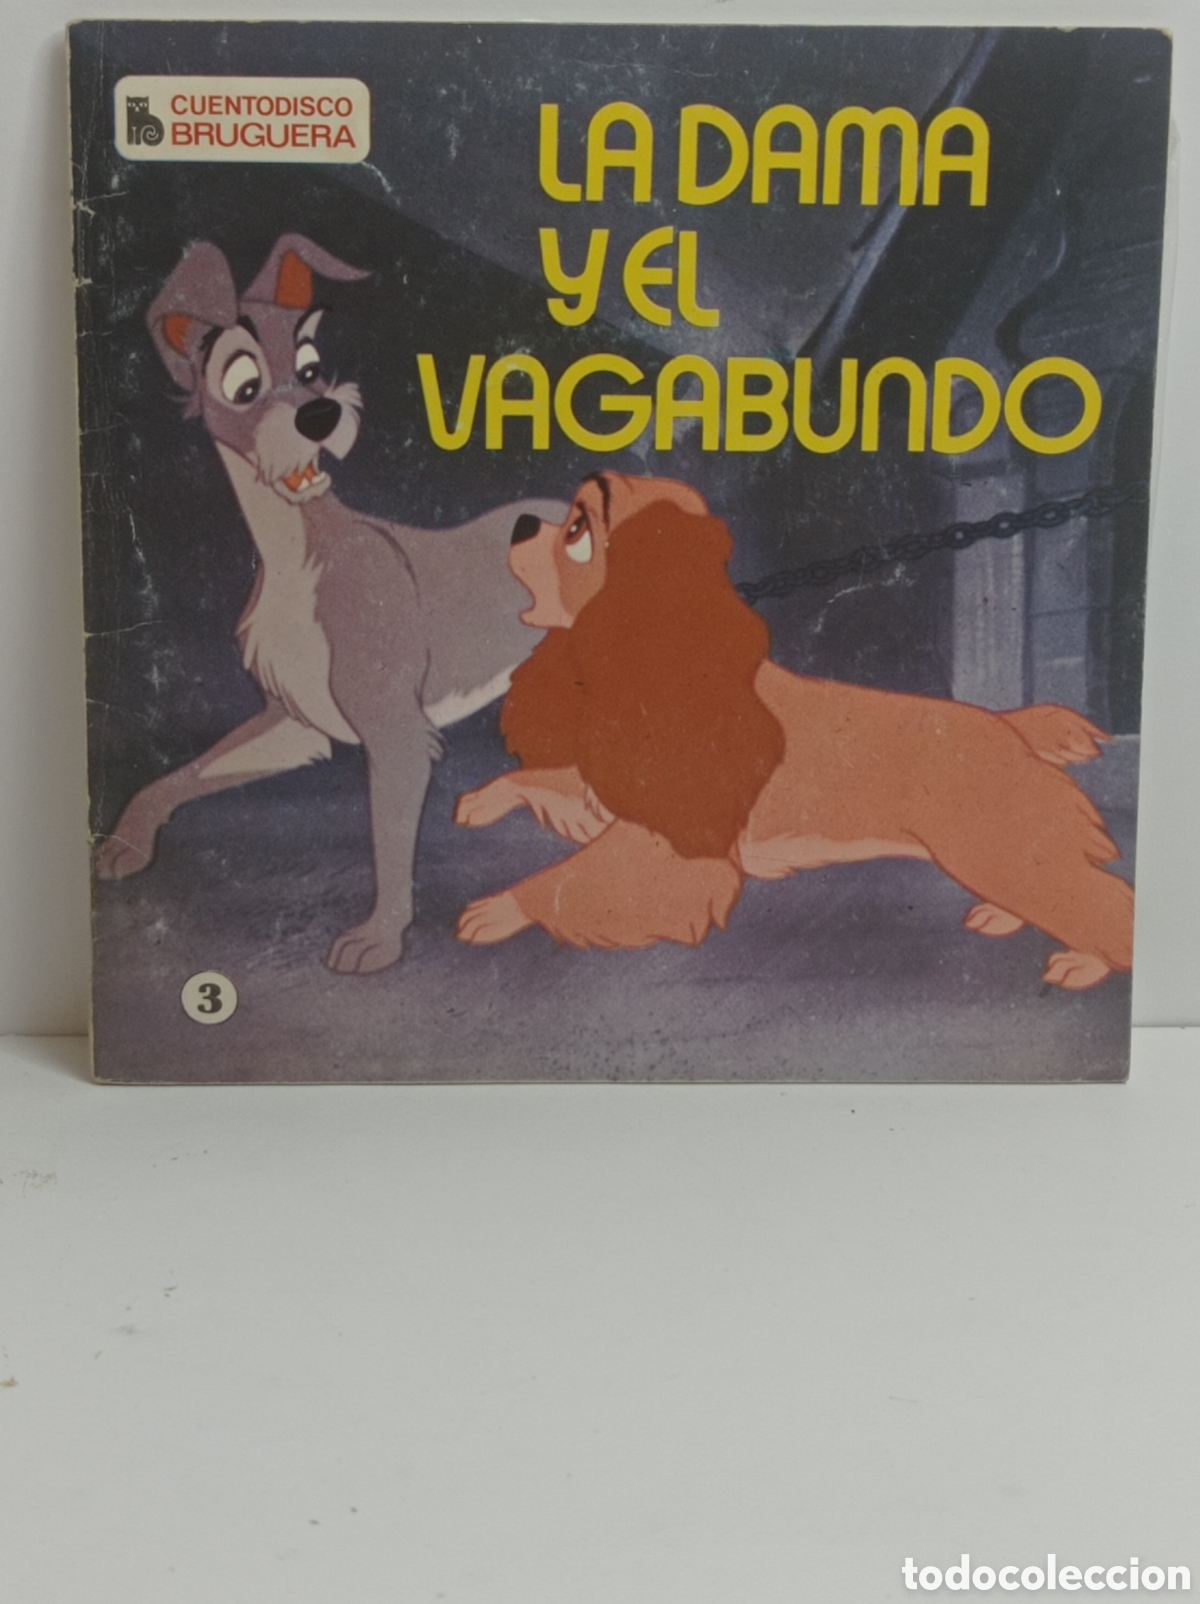 DISNEY) LA DAMA Y EL VAGABUNDO) 1963 (DISNEYLAND/307M/7 33rpm) VG+/VG+!